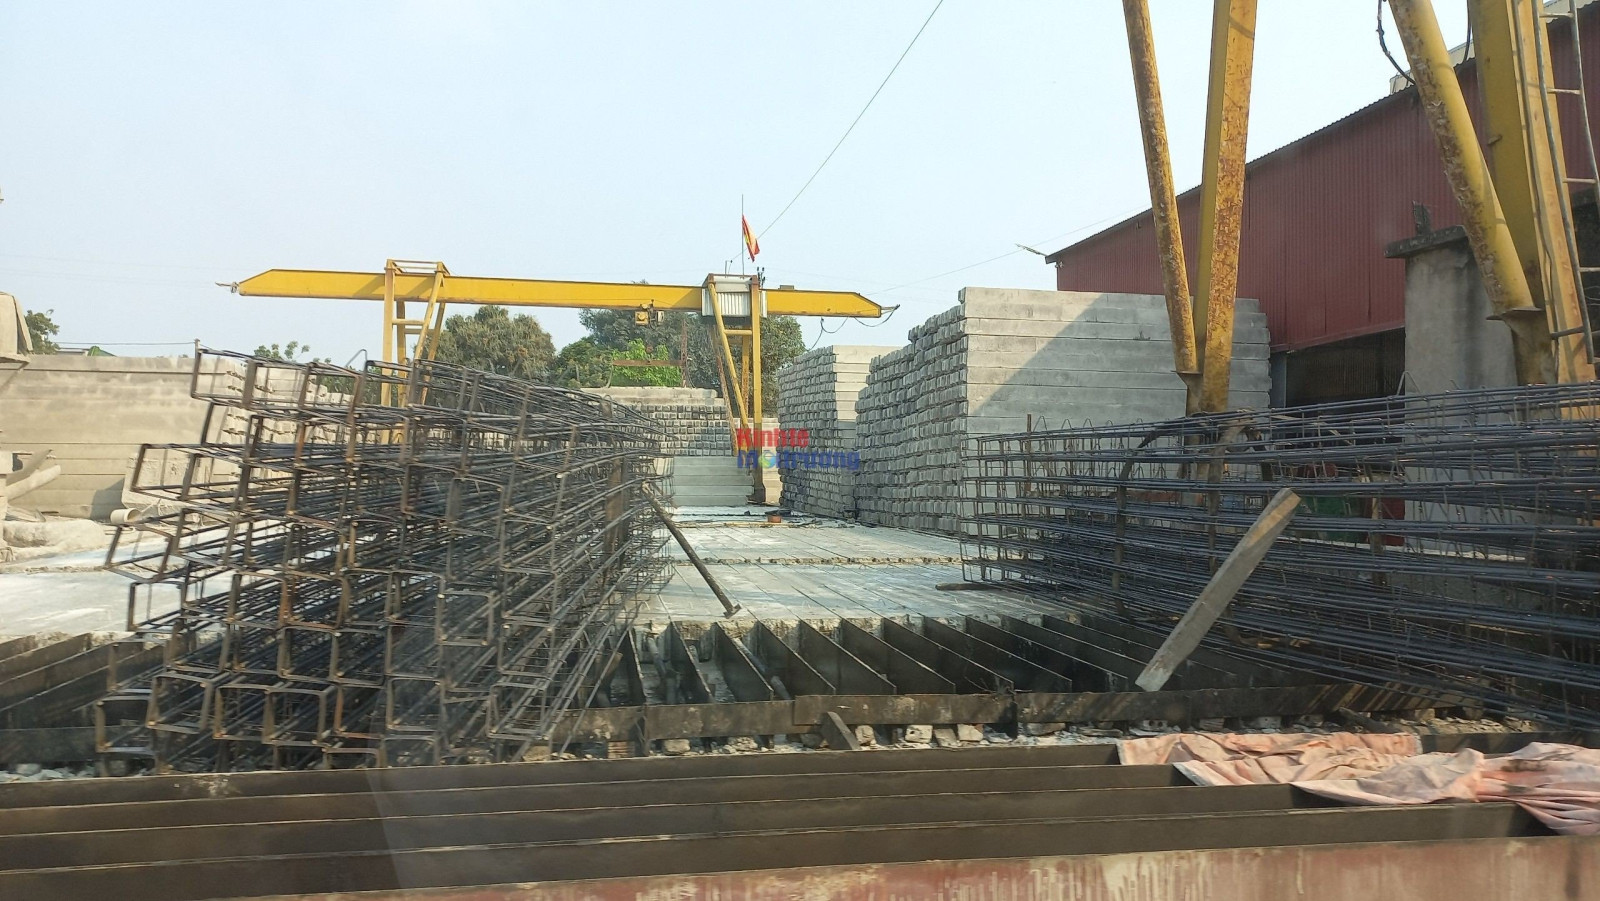 Trạm sản xuất cọc bê tông của Công ty TNHH Xây dựng - Thương mại Hiệu Hòa Hưng được xây dựng trong điểm dân cư mới thôn Bằng Giã, xã Tân Việt